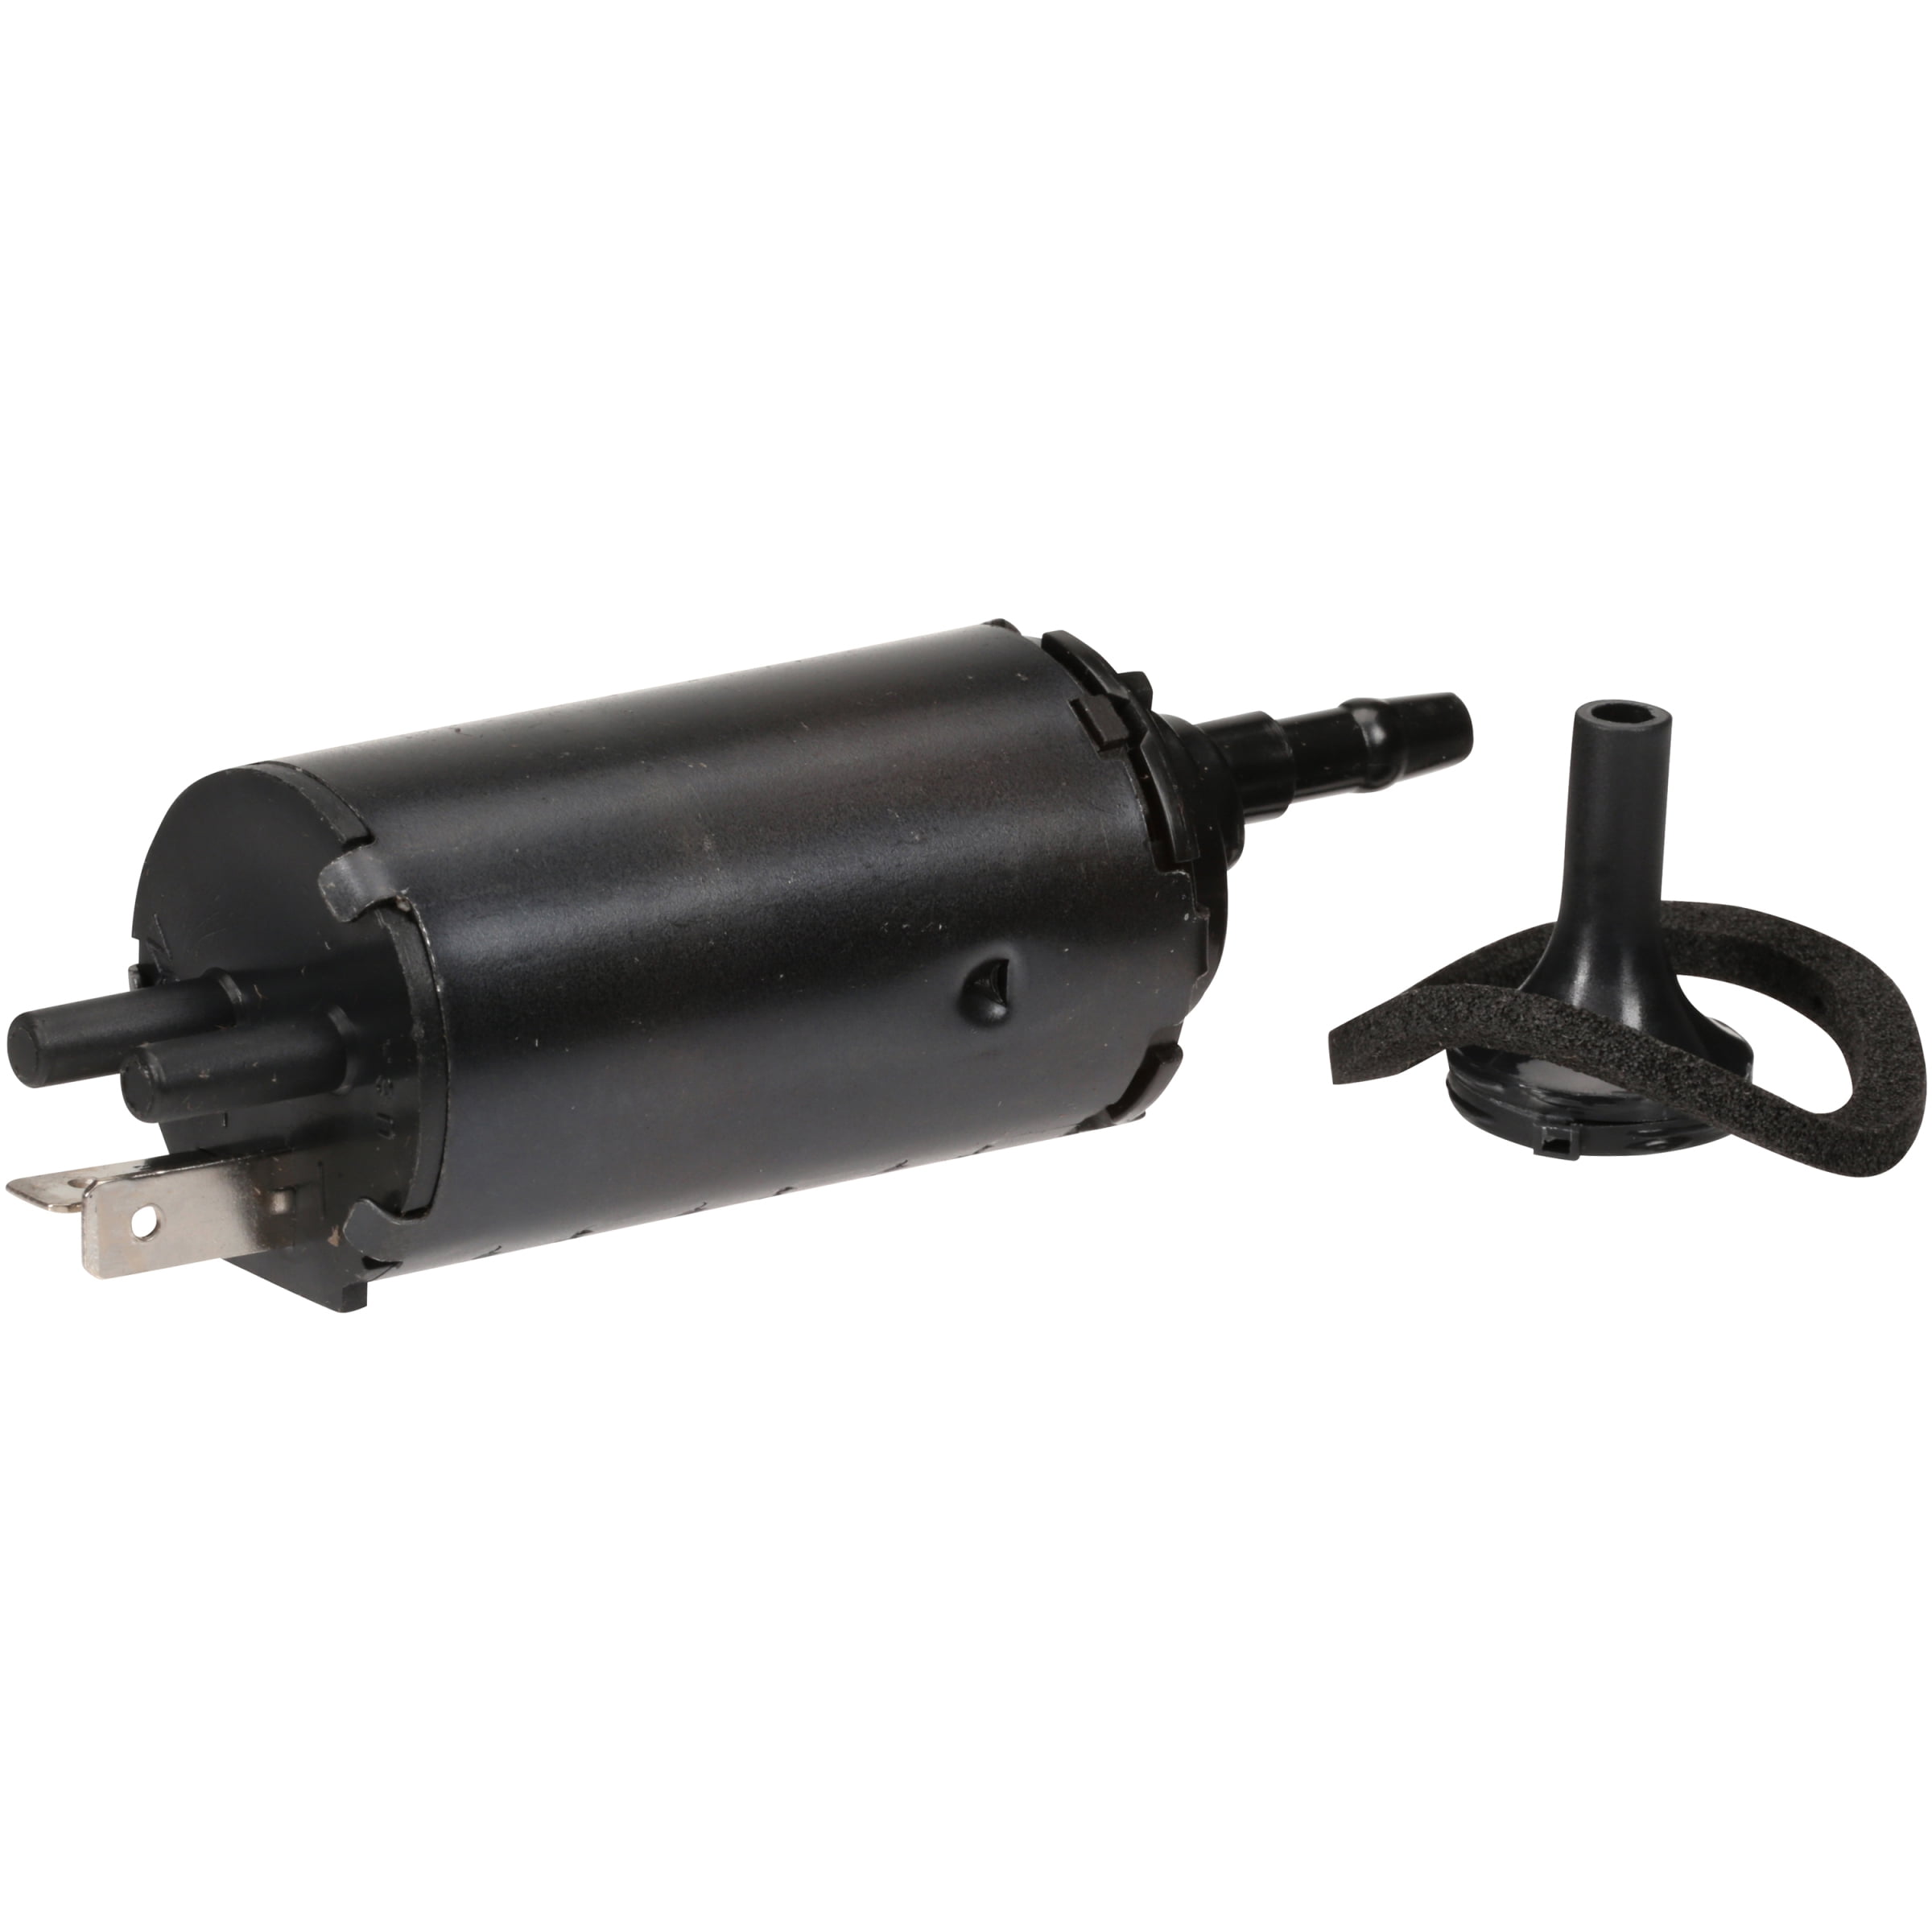 Windshield / Wiper Washer Fluid Pump - Trico Spray 11-533